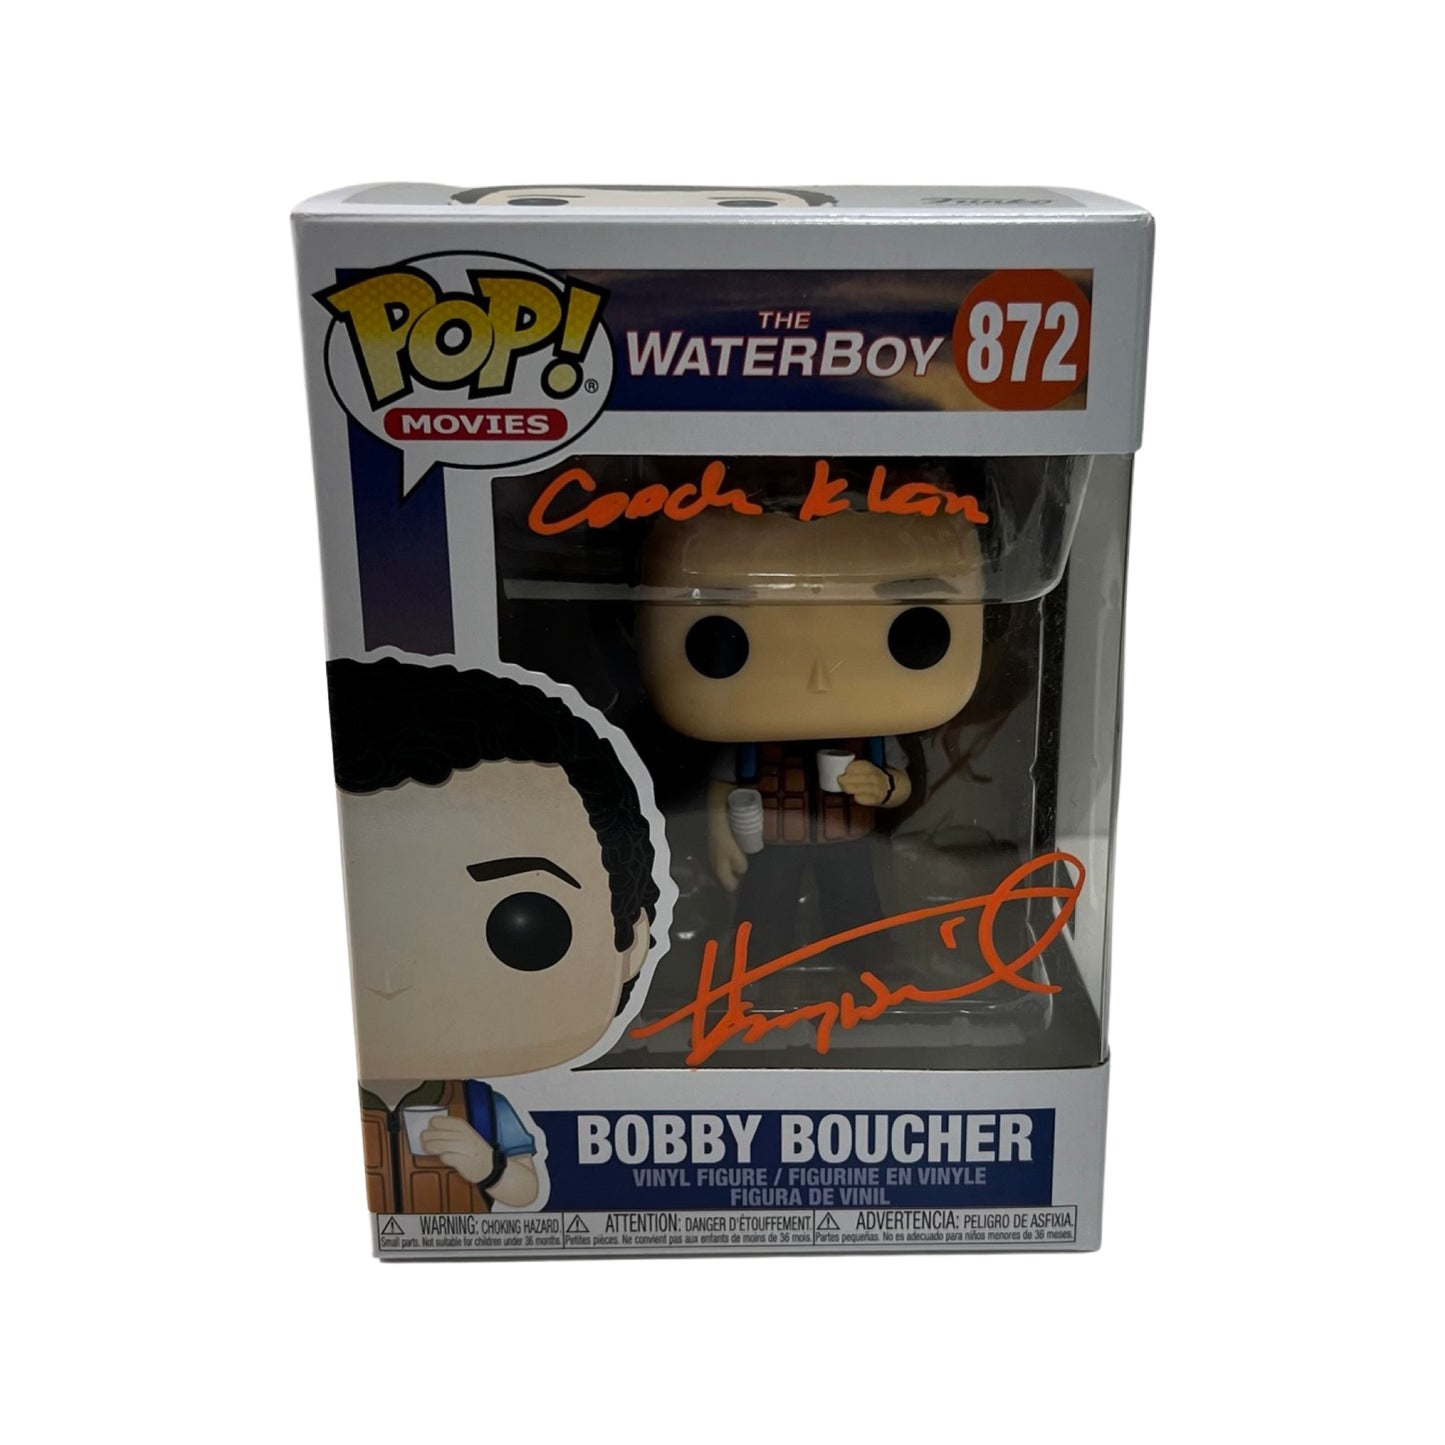 Henry Winkler Autographed Bobby Boucher Waterboy Funko Pop #872 "Coach Klein" Inscription Orange Ink Steiner CX